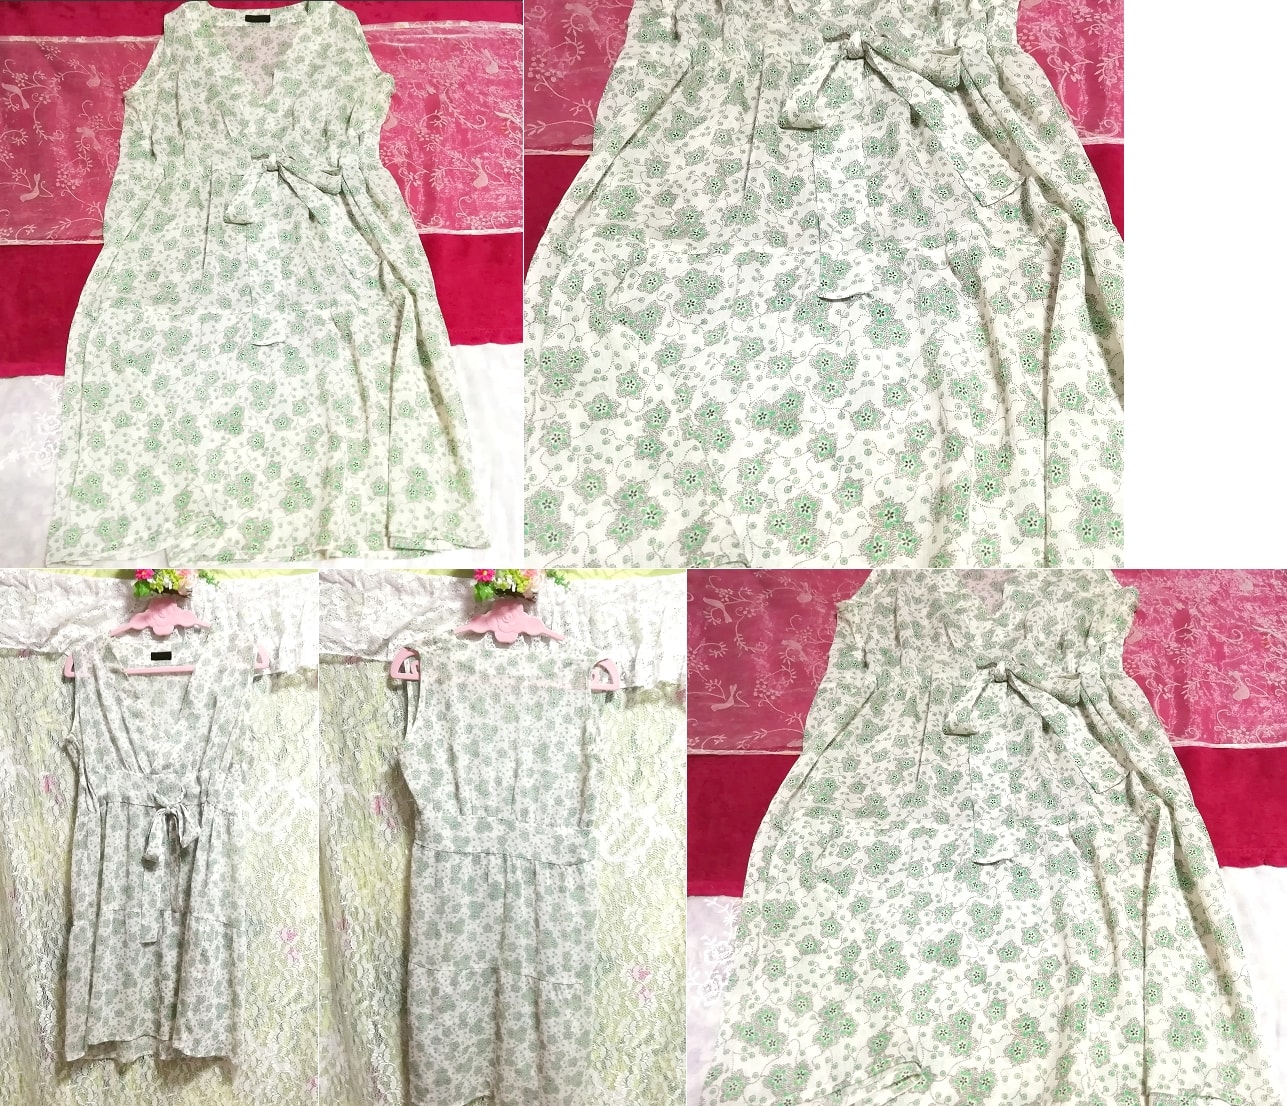 緑グリーン花柄シフォンシースルーノースリーブネグリジェワンピース Green floral pattern chiffon negligee see-through dress, ワンピース, ミニスカート, Mサイズ